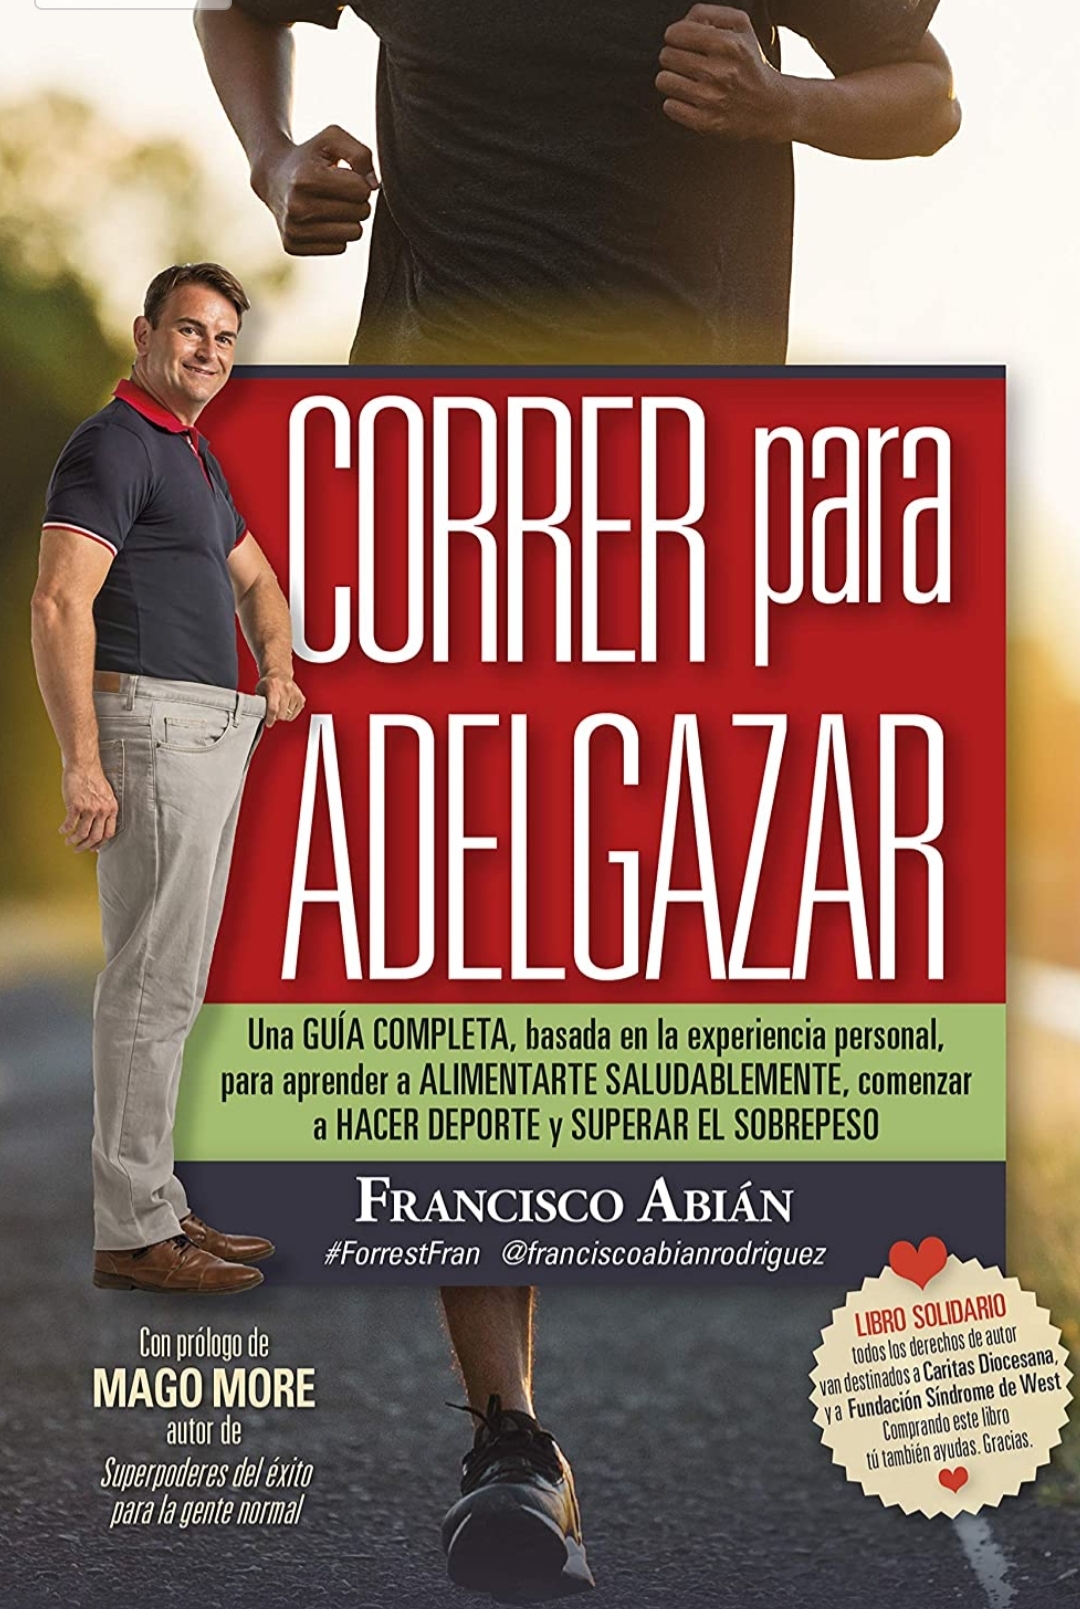 La portada del libro de Francisco Abián "Correr para adelgazar" / Fran Abián